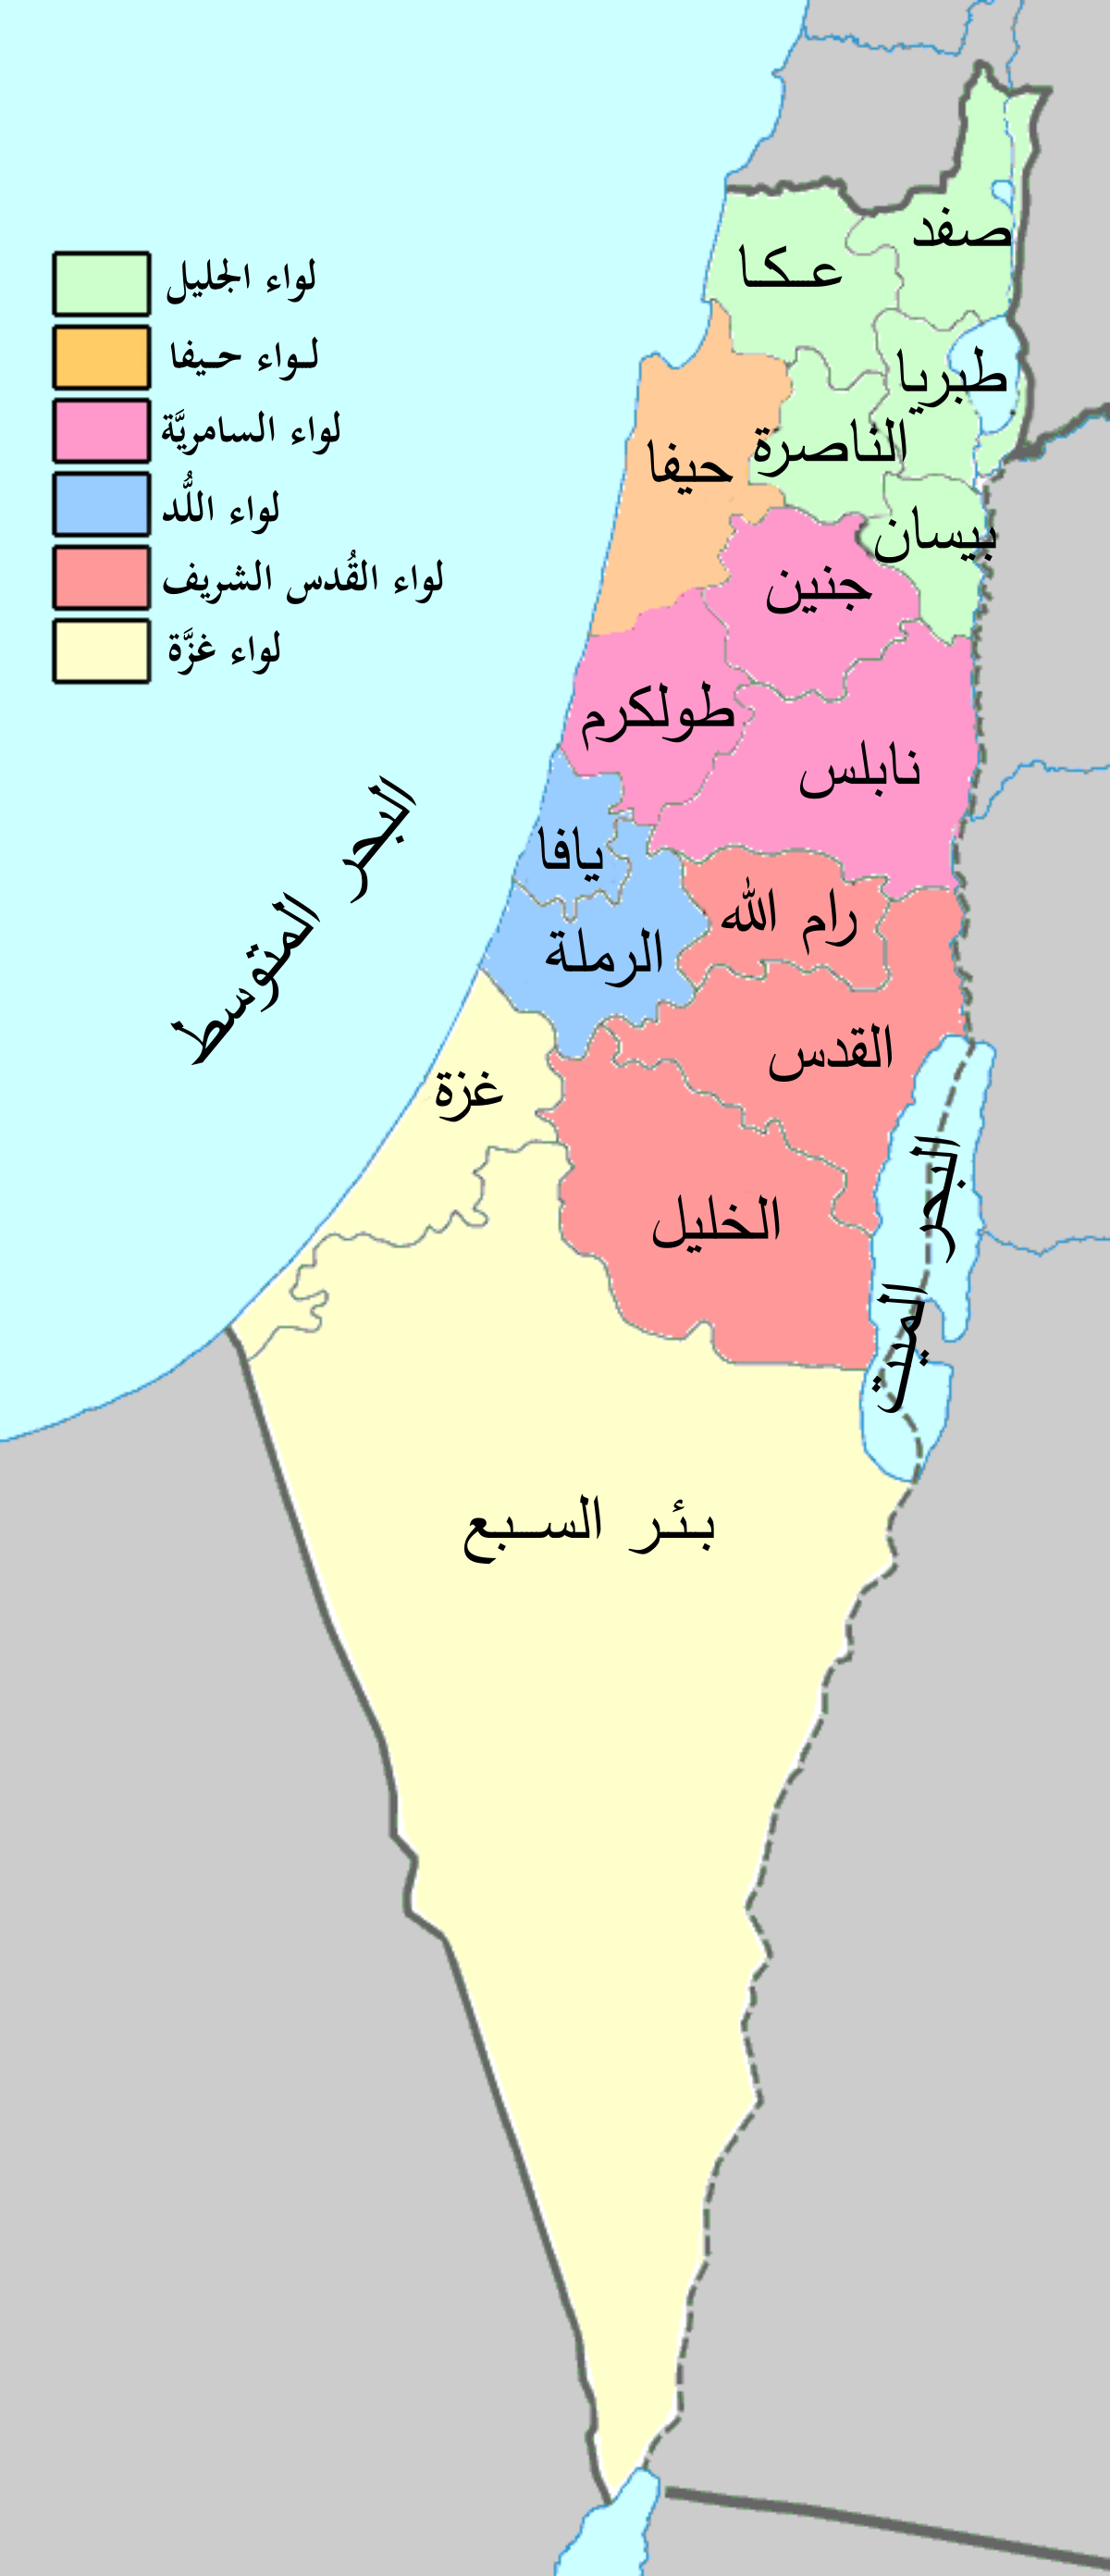 خريطة مدن فلسطين الجغرافية (التقسيم الإداري)